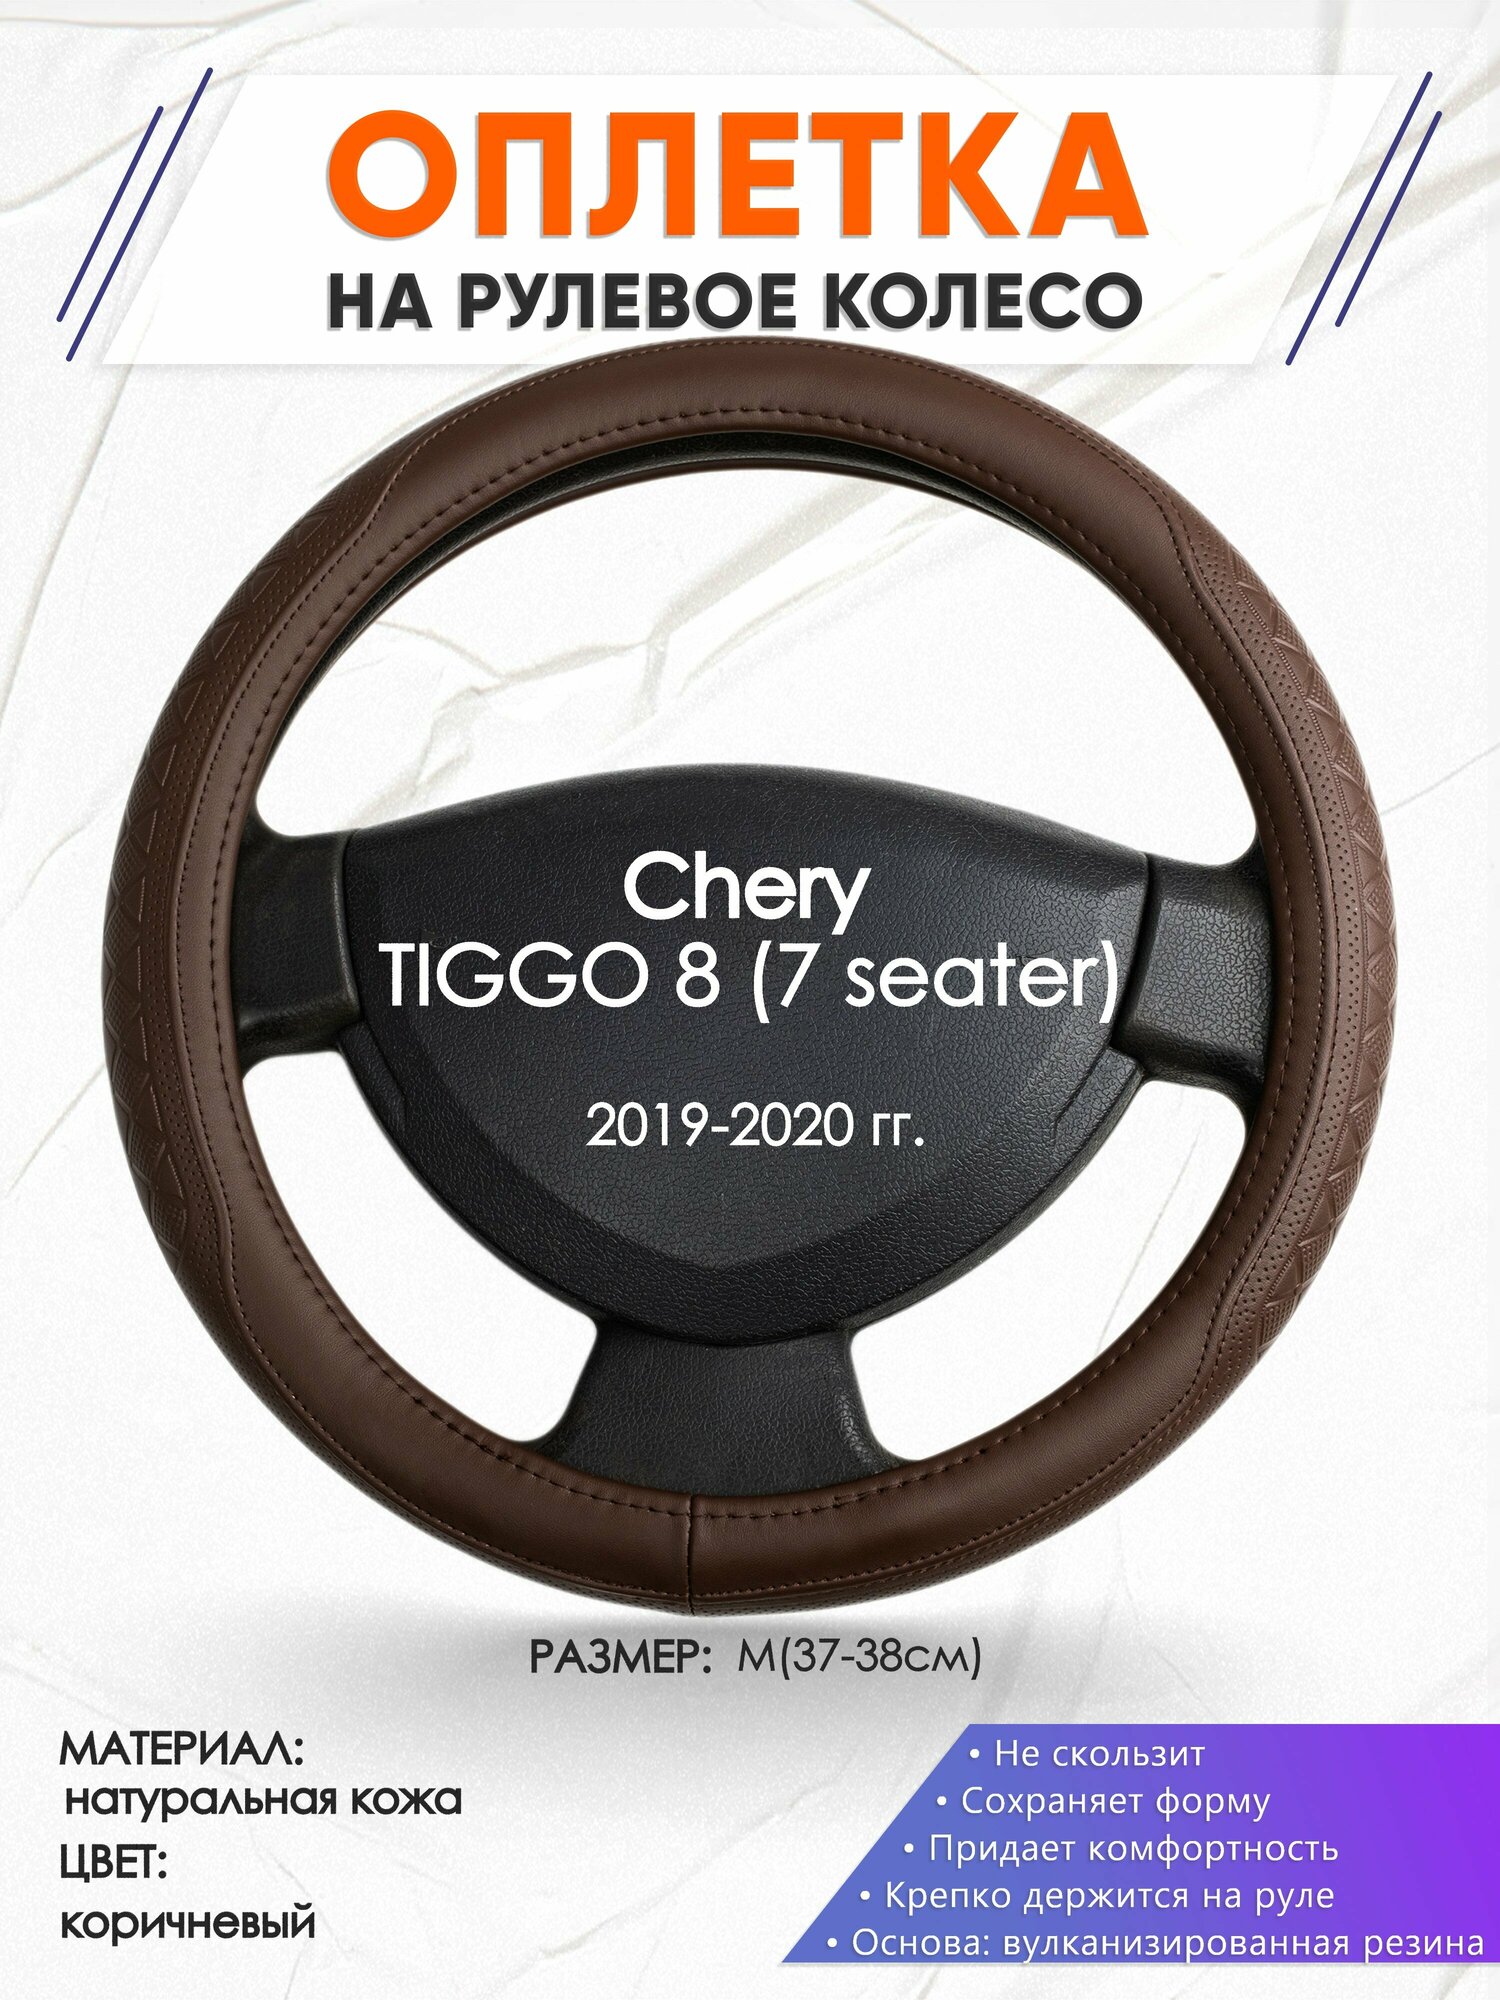 Оплетка наруль для Chery TIGGO 8 (7 seater)(Чери Тигго 8) 2019-2020 годов выпуска размер M(37-38см) Натуральная кожа 32